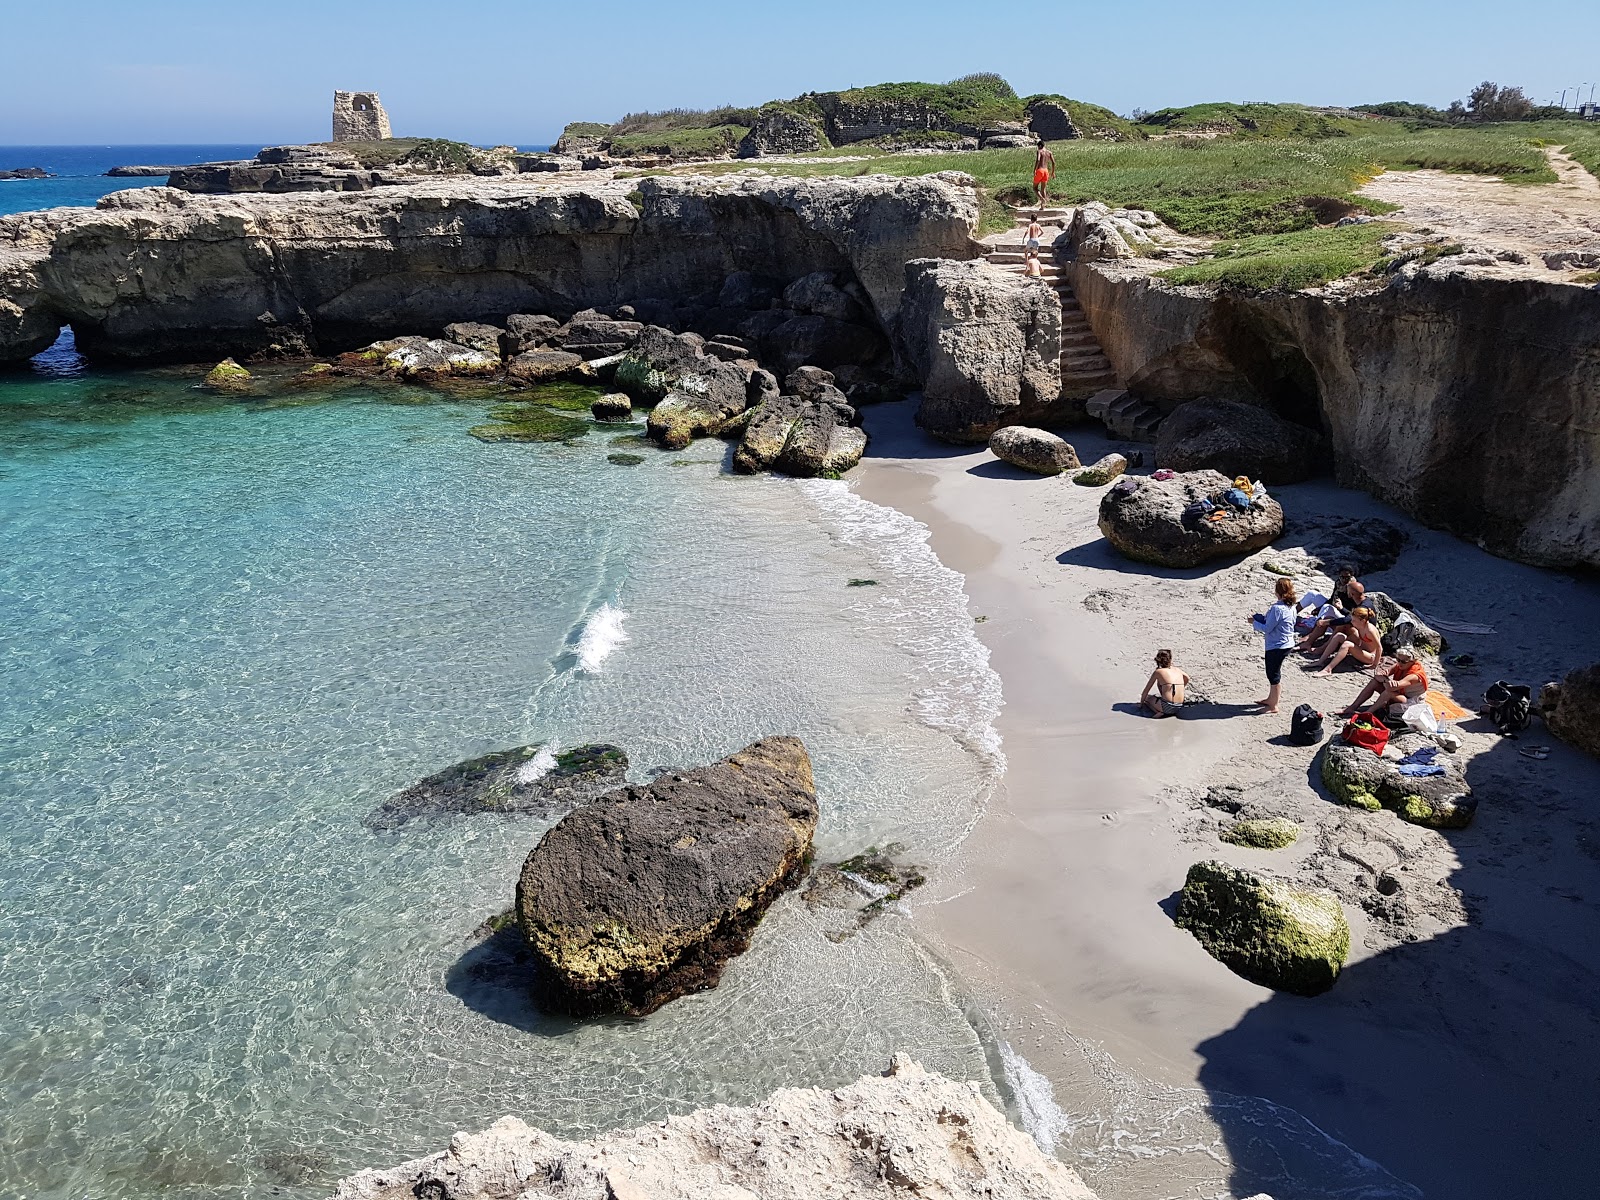 Foto von Spiaggia di Portulignu mit reines blaues Oberfläche